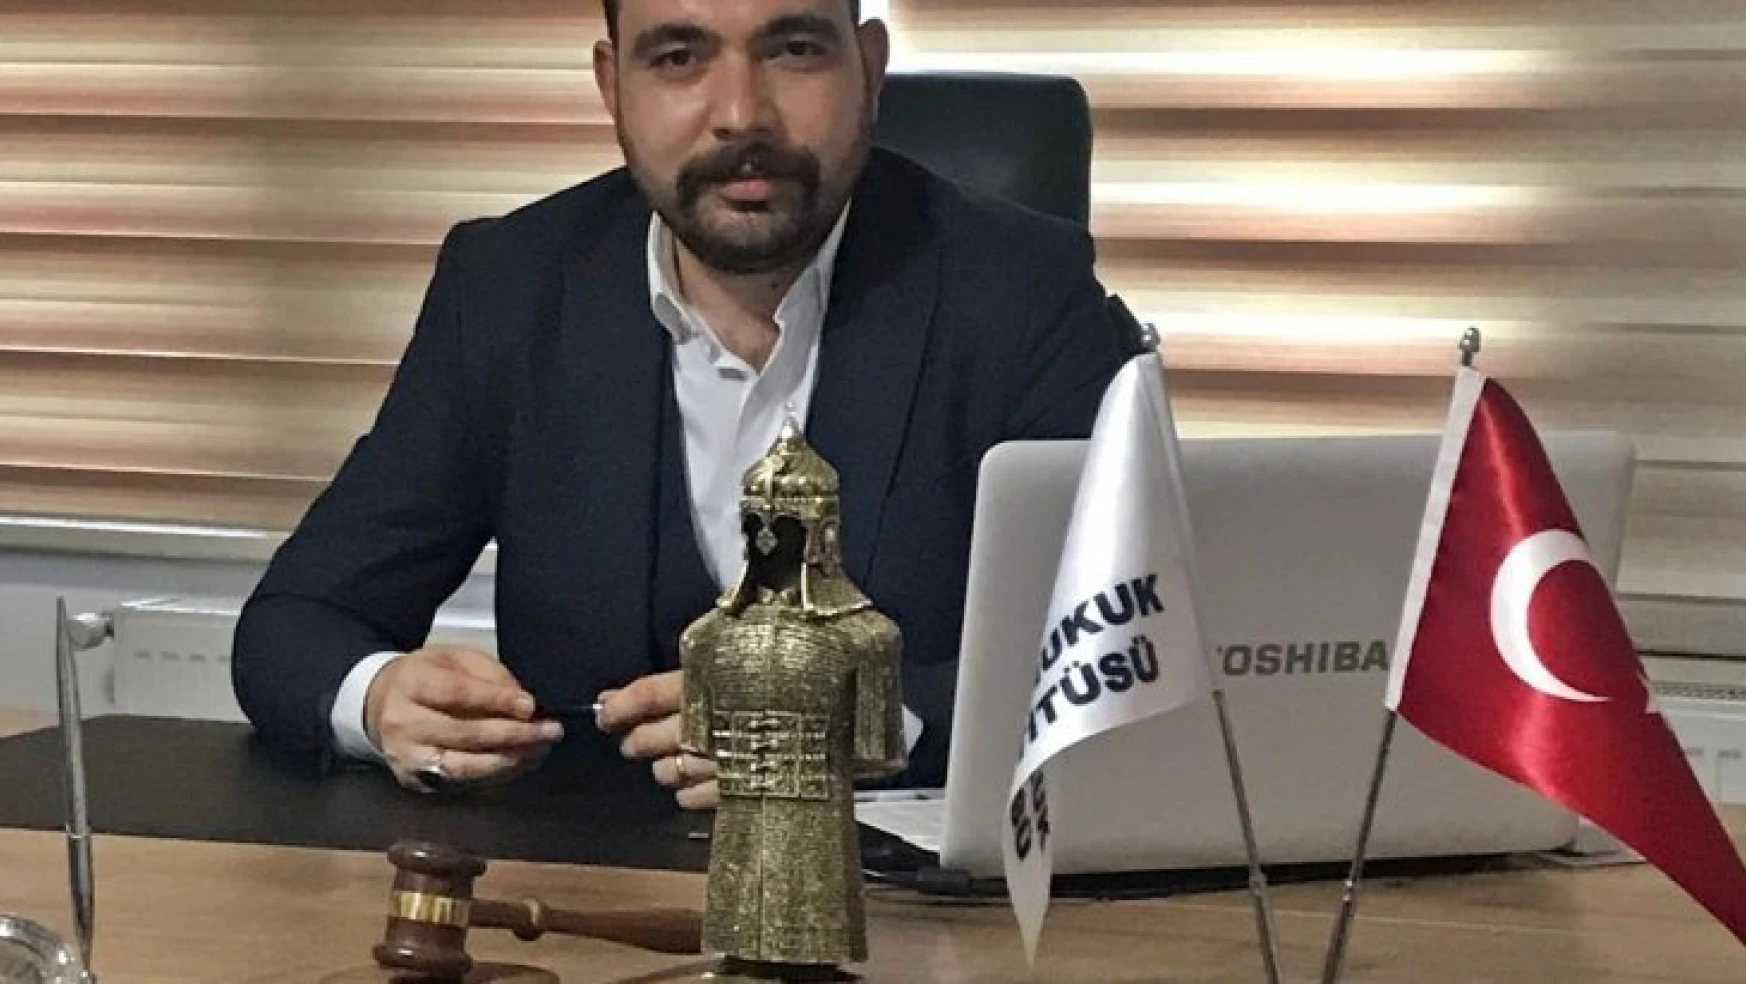 Türk Hukuk Enstitüsü Derneği Şube Başkanı Gök, Nagehan Alçı'ya Suç Duyurusu